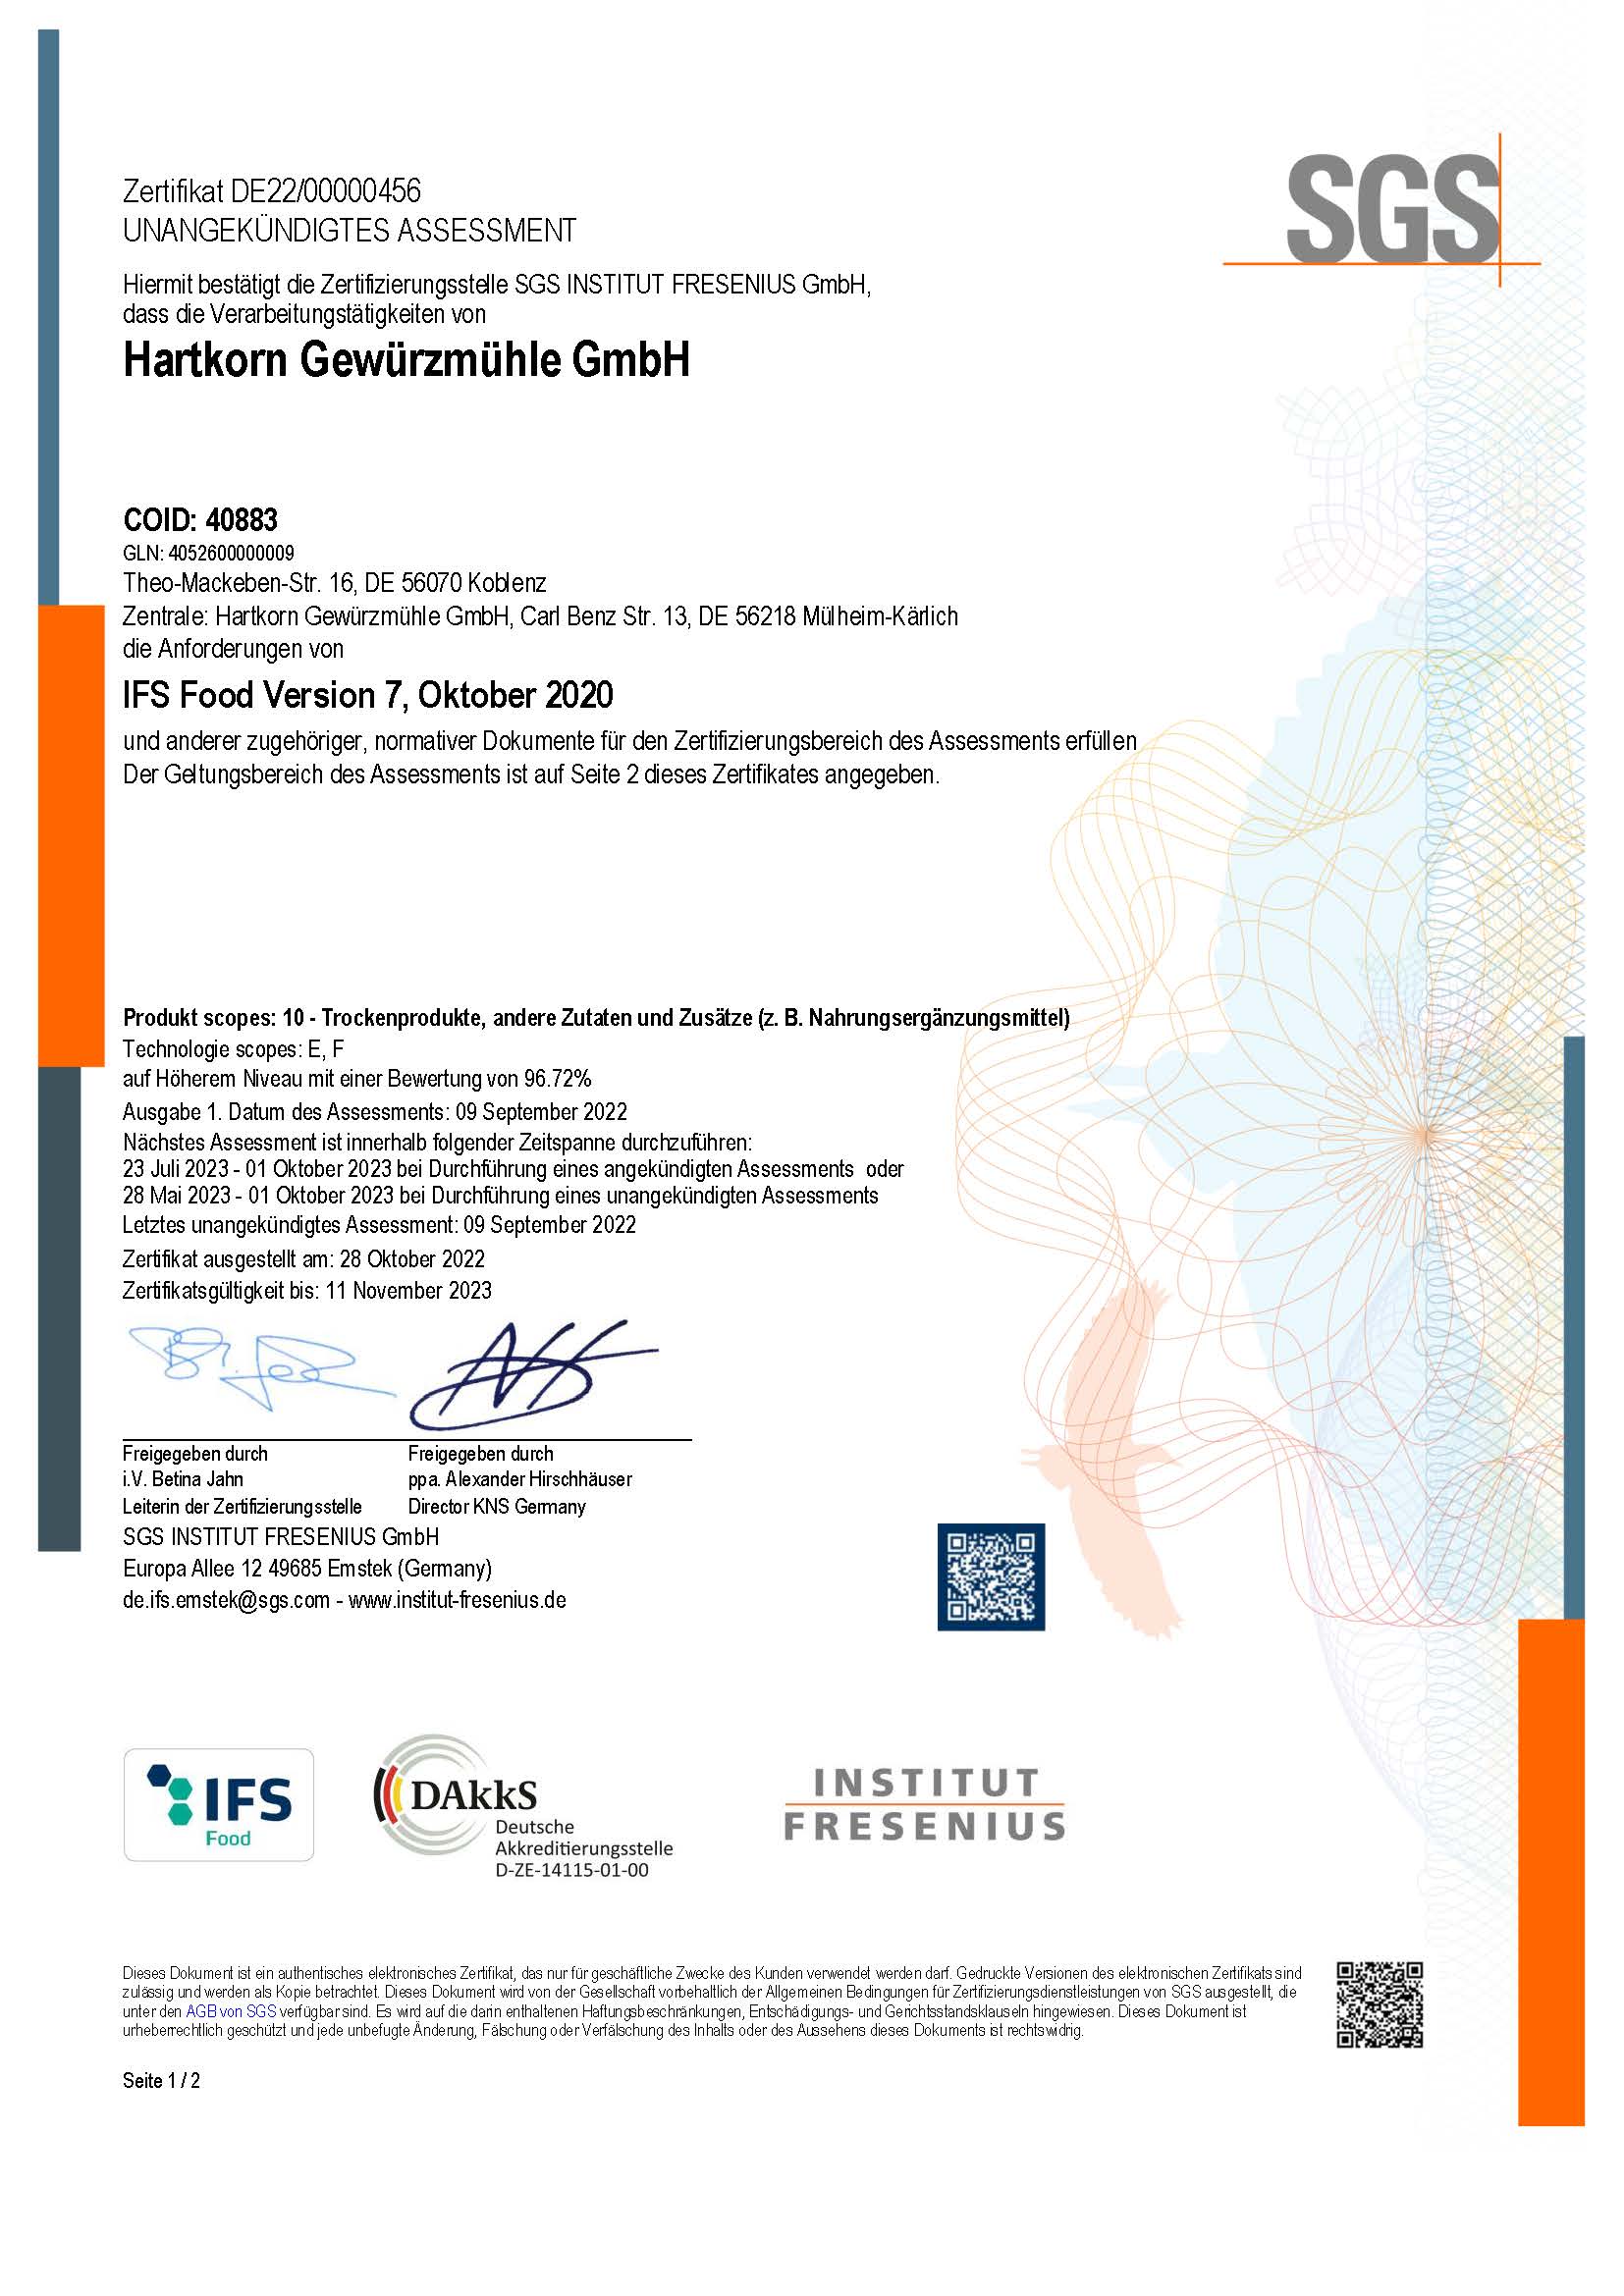 IFS Zertifizierung Hartkorn Gewürzmühle GmbH